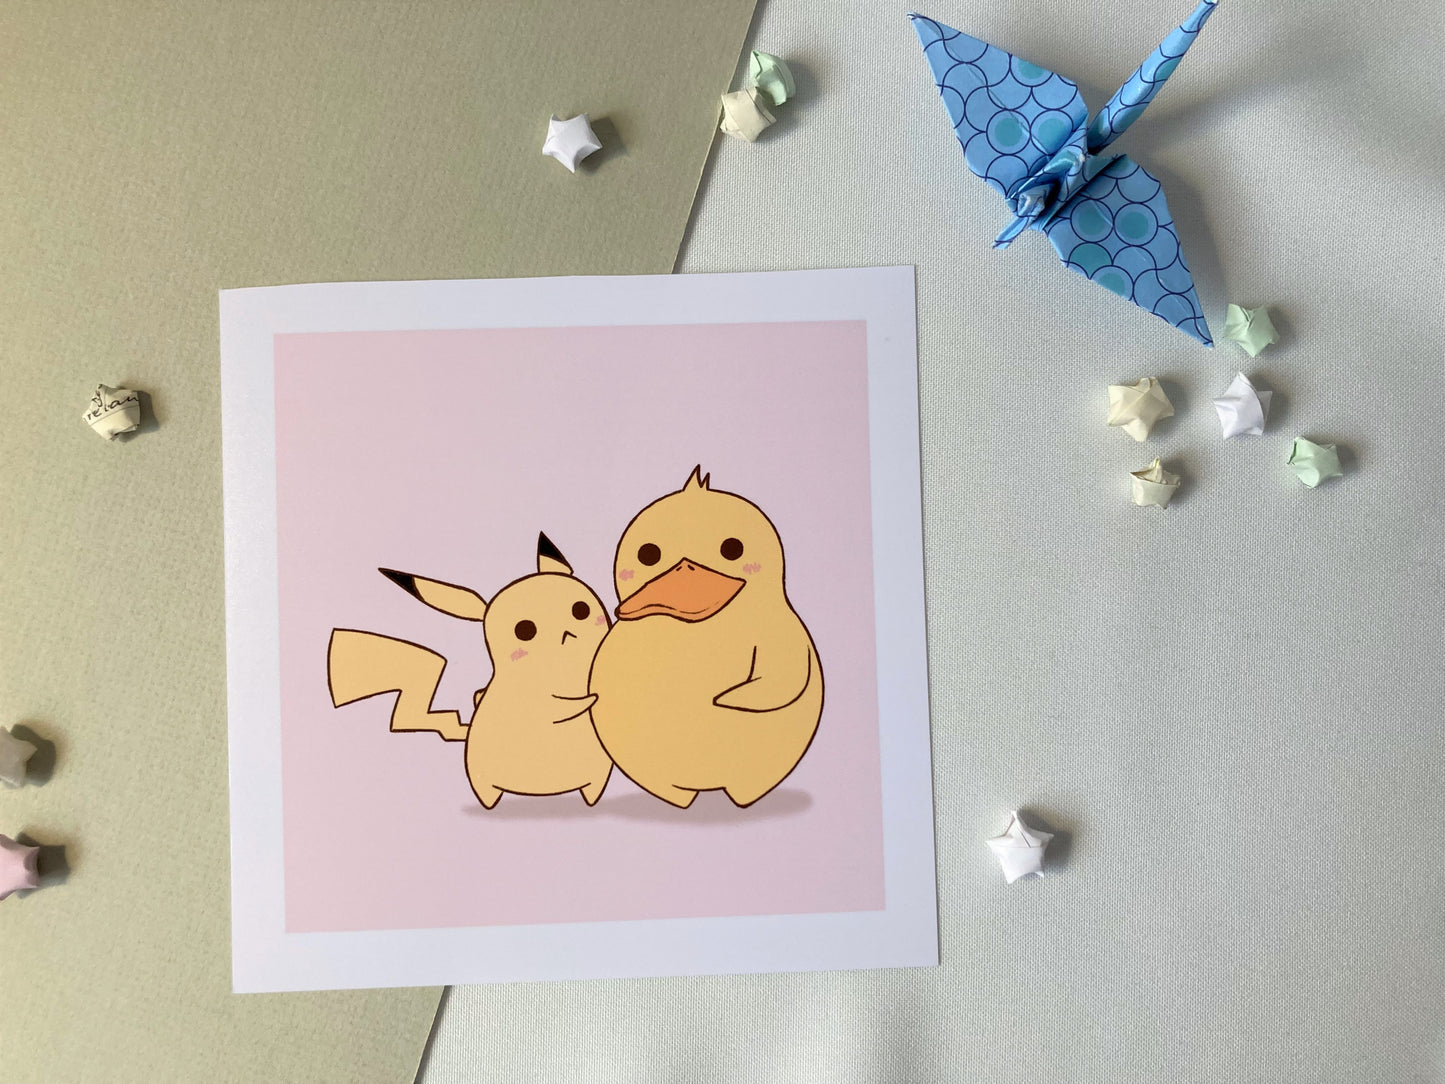 Pikachu and Psyduck print